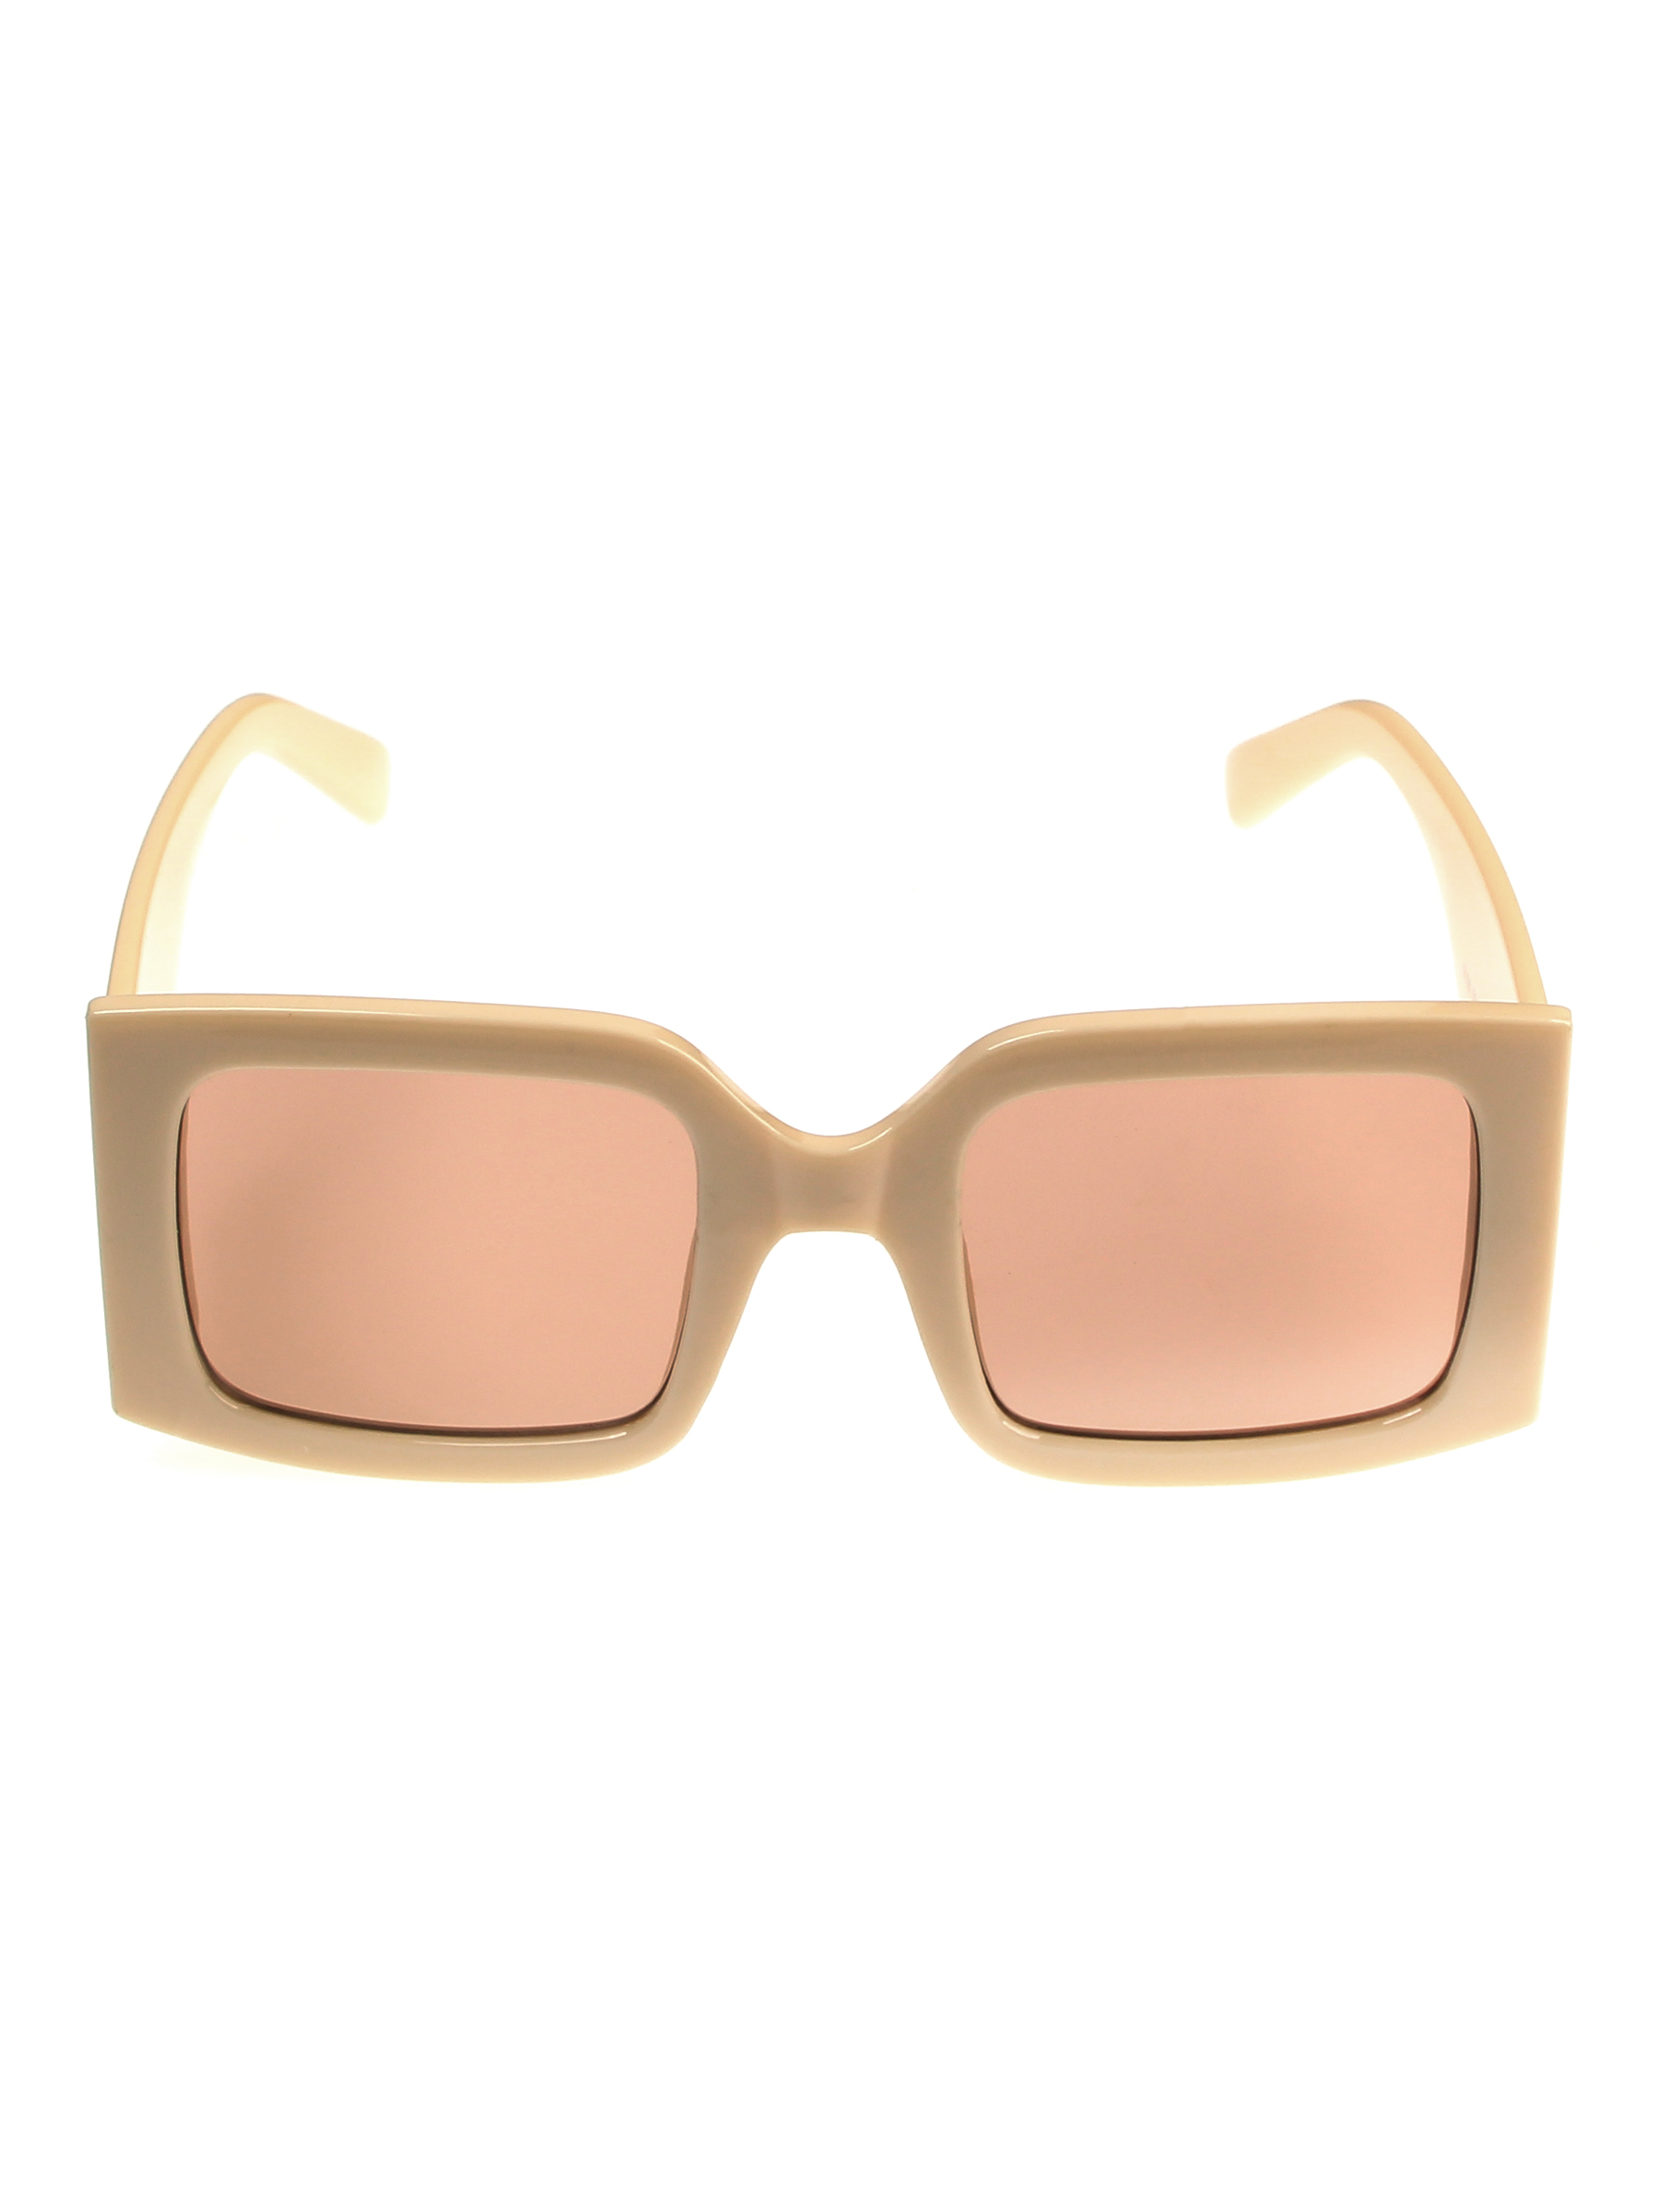 Солнцезащитные очки женские Pretty Mania MDP025 коричневые